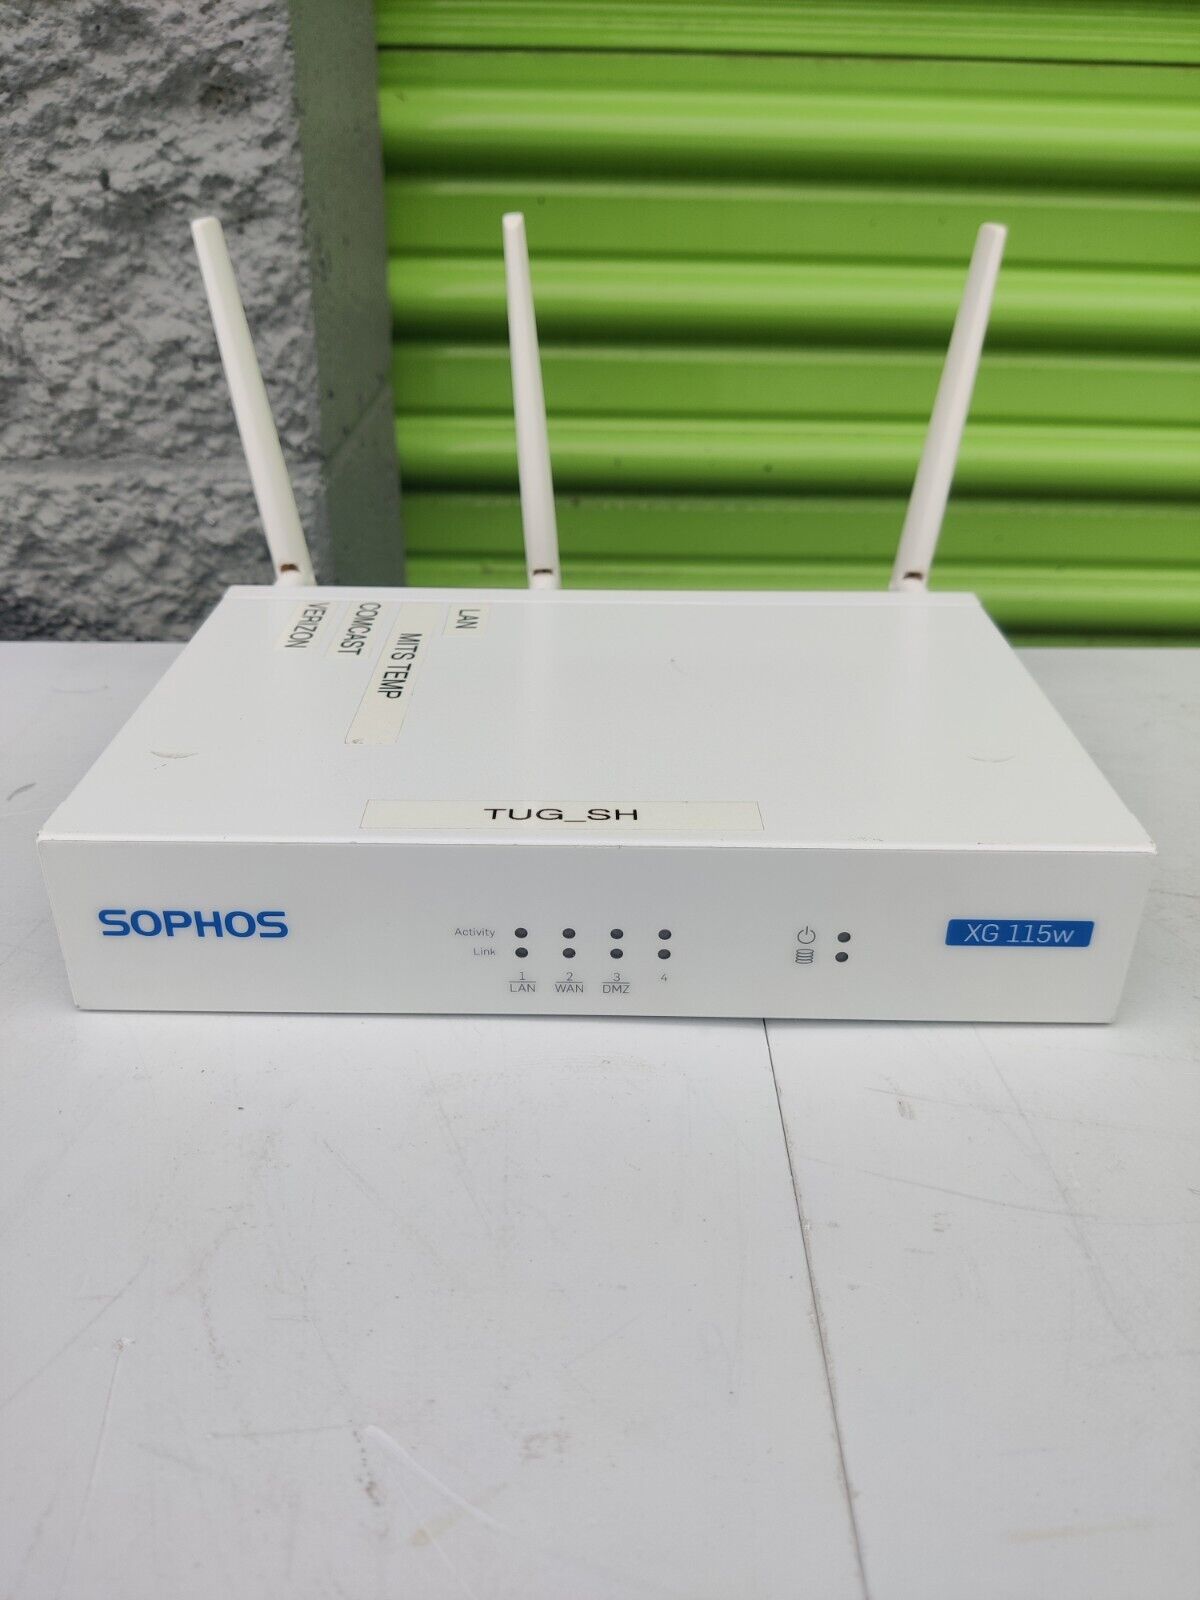 Sophos XG 115w Firewall Desktop Network Security Appliance No AC Adapter